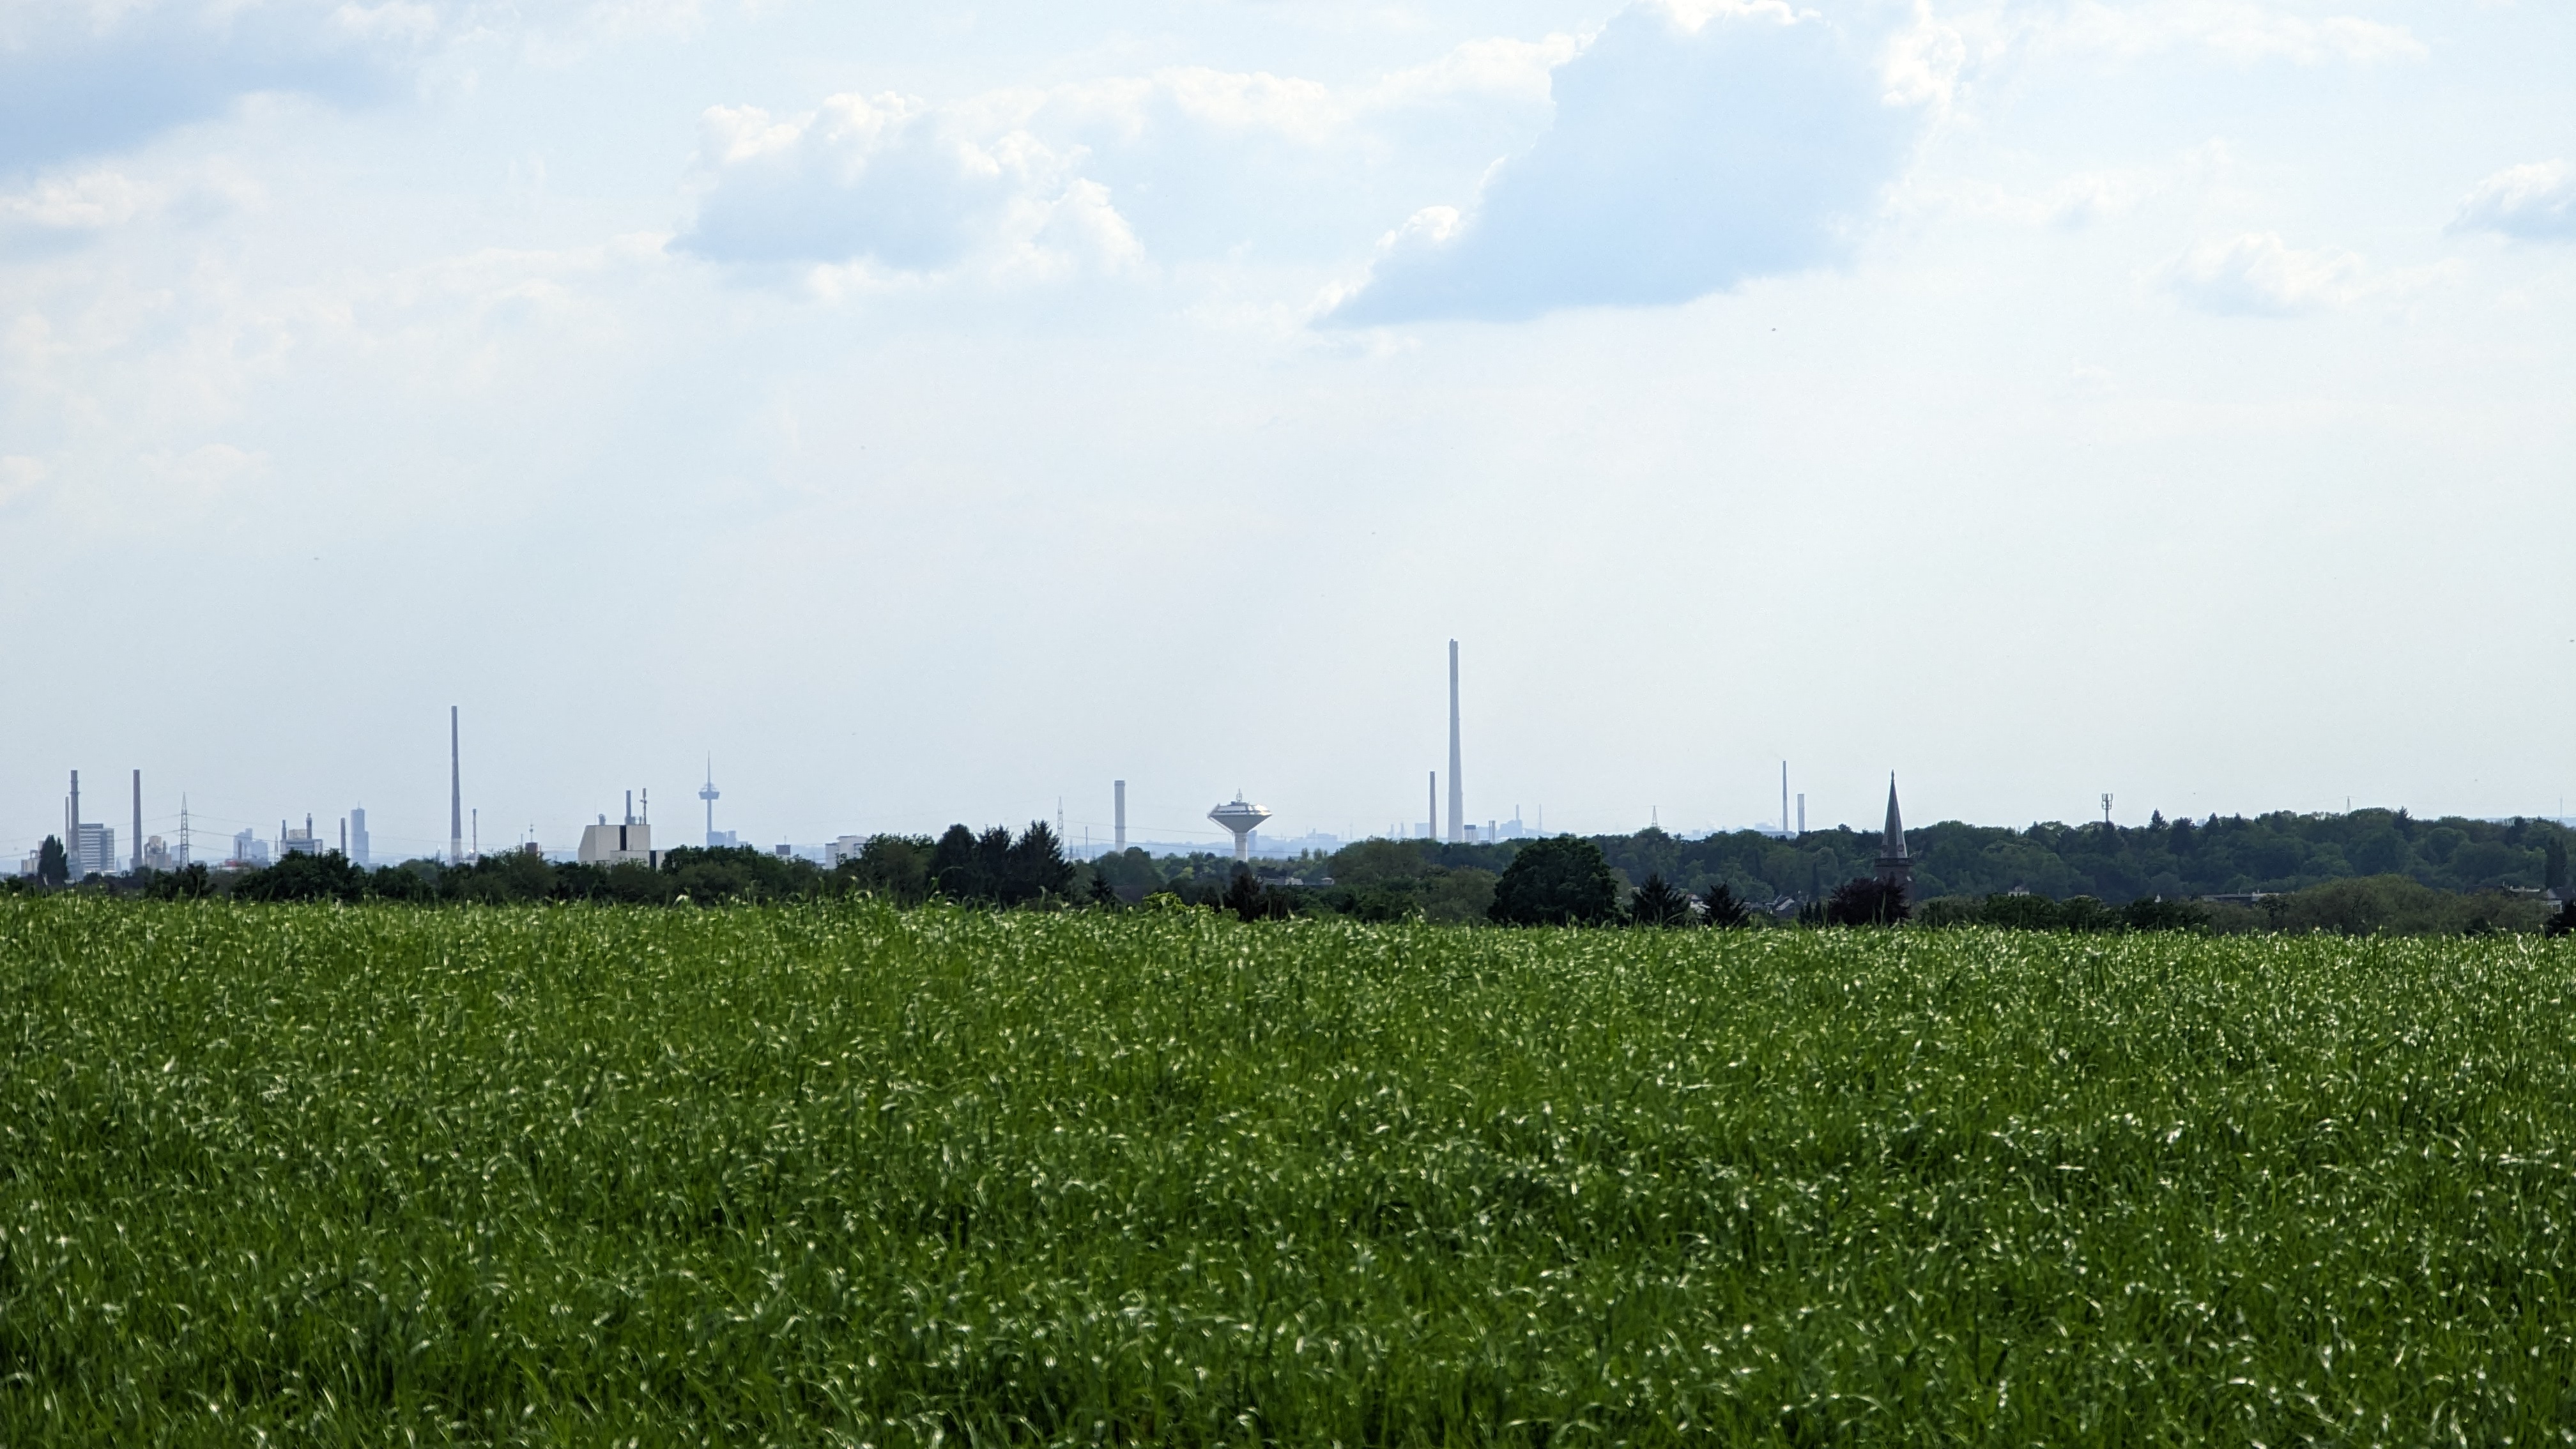 Die Skyline von Leverkusen vom Imbach aus mit Blick auf den Wasserturm. Die Pflanzen auf dem Feld sind noch jung und grün.